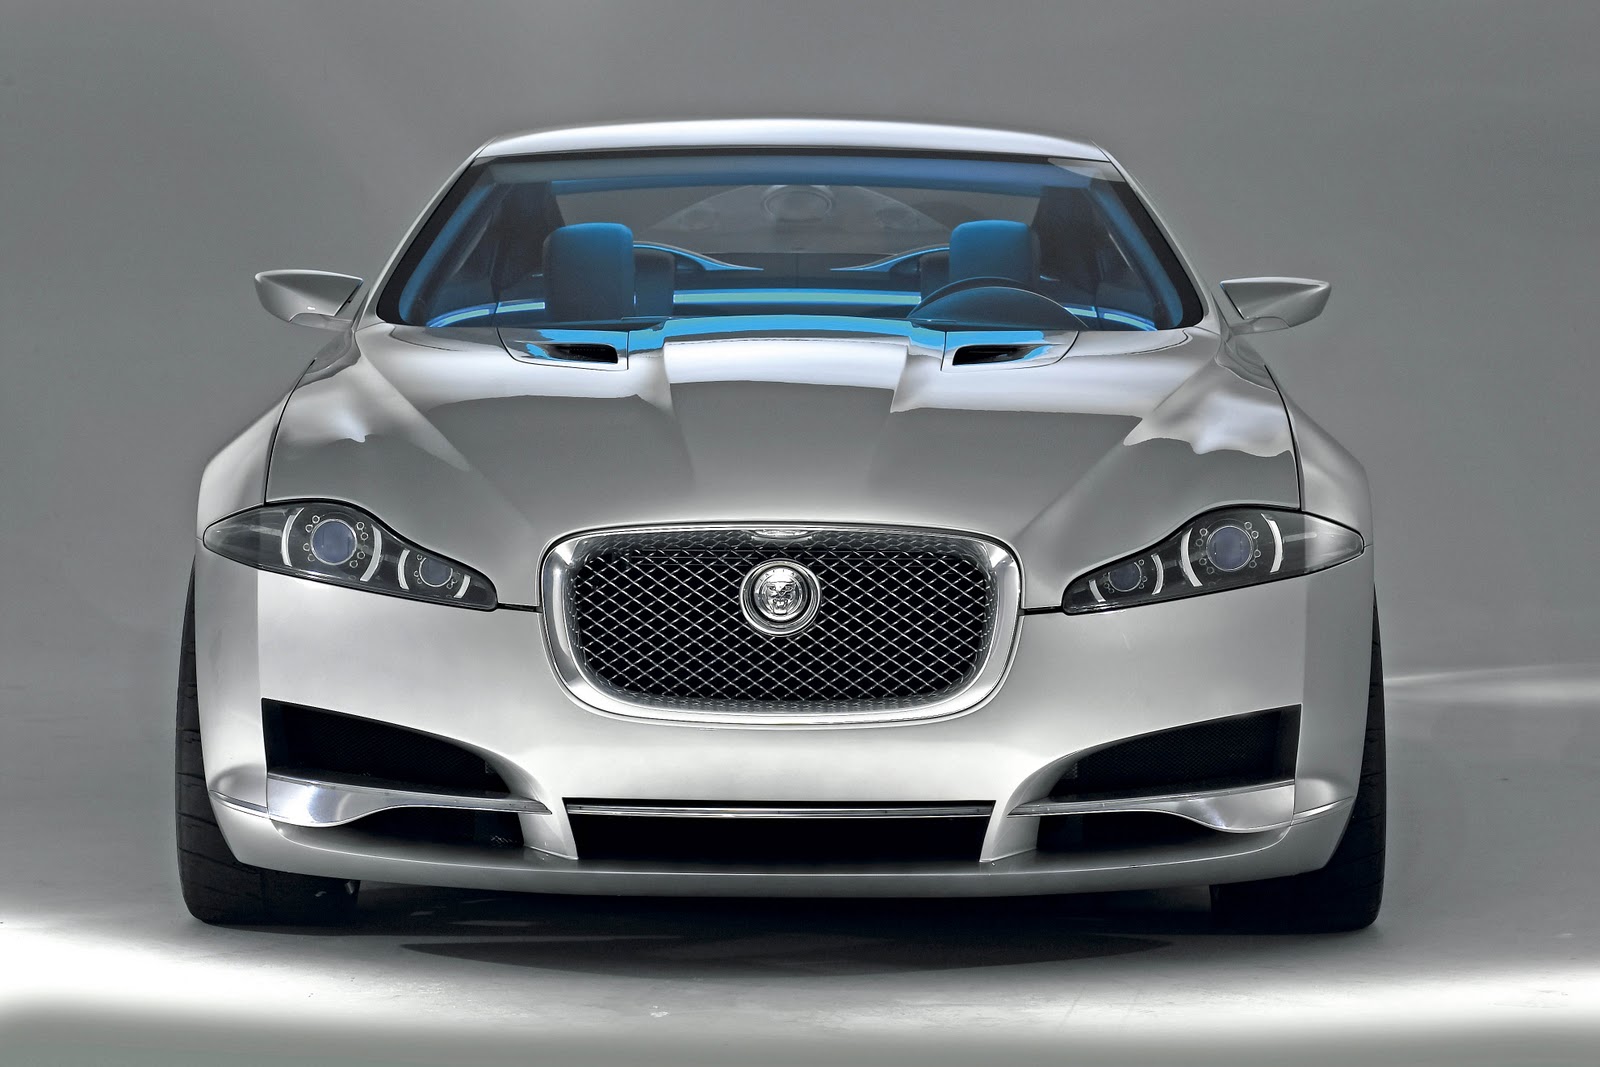 voitures jaguar fonds d'écran hd,véhicule terrestre,véhicule,véhicule de luxe,voiture,grille